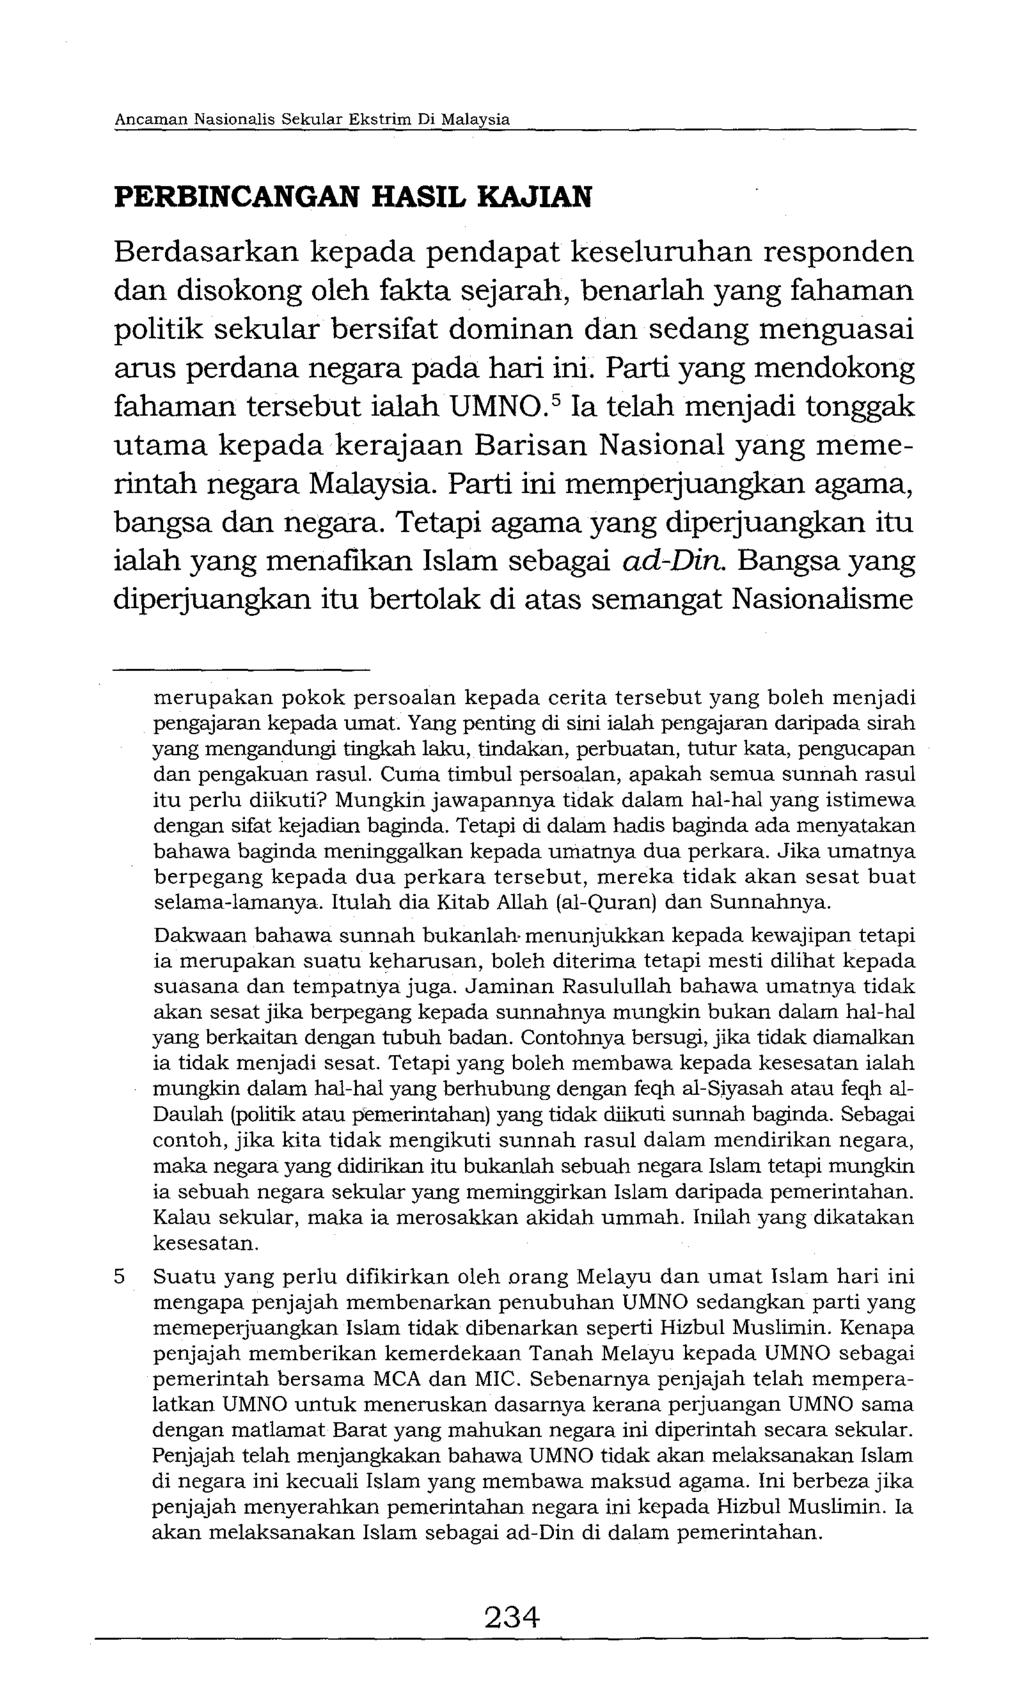 Ancaman Nasionalis Sekular Ekstrim Di Malaysia PERBINCANGAN HASIL KAJIAN Berdasarkan kepada pendapat keseluruhan responden dan disokong oleh fakta sejarah, benarlah yang fahaman politik sekular